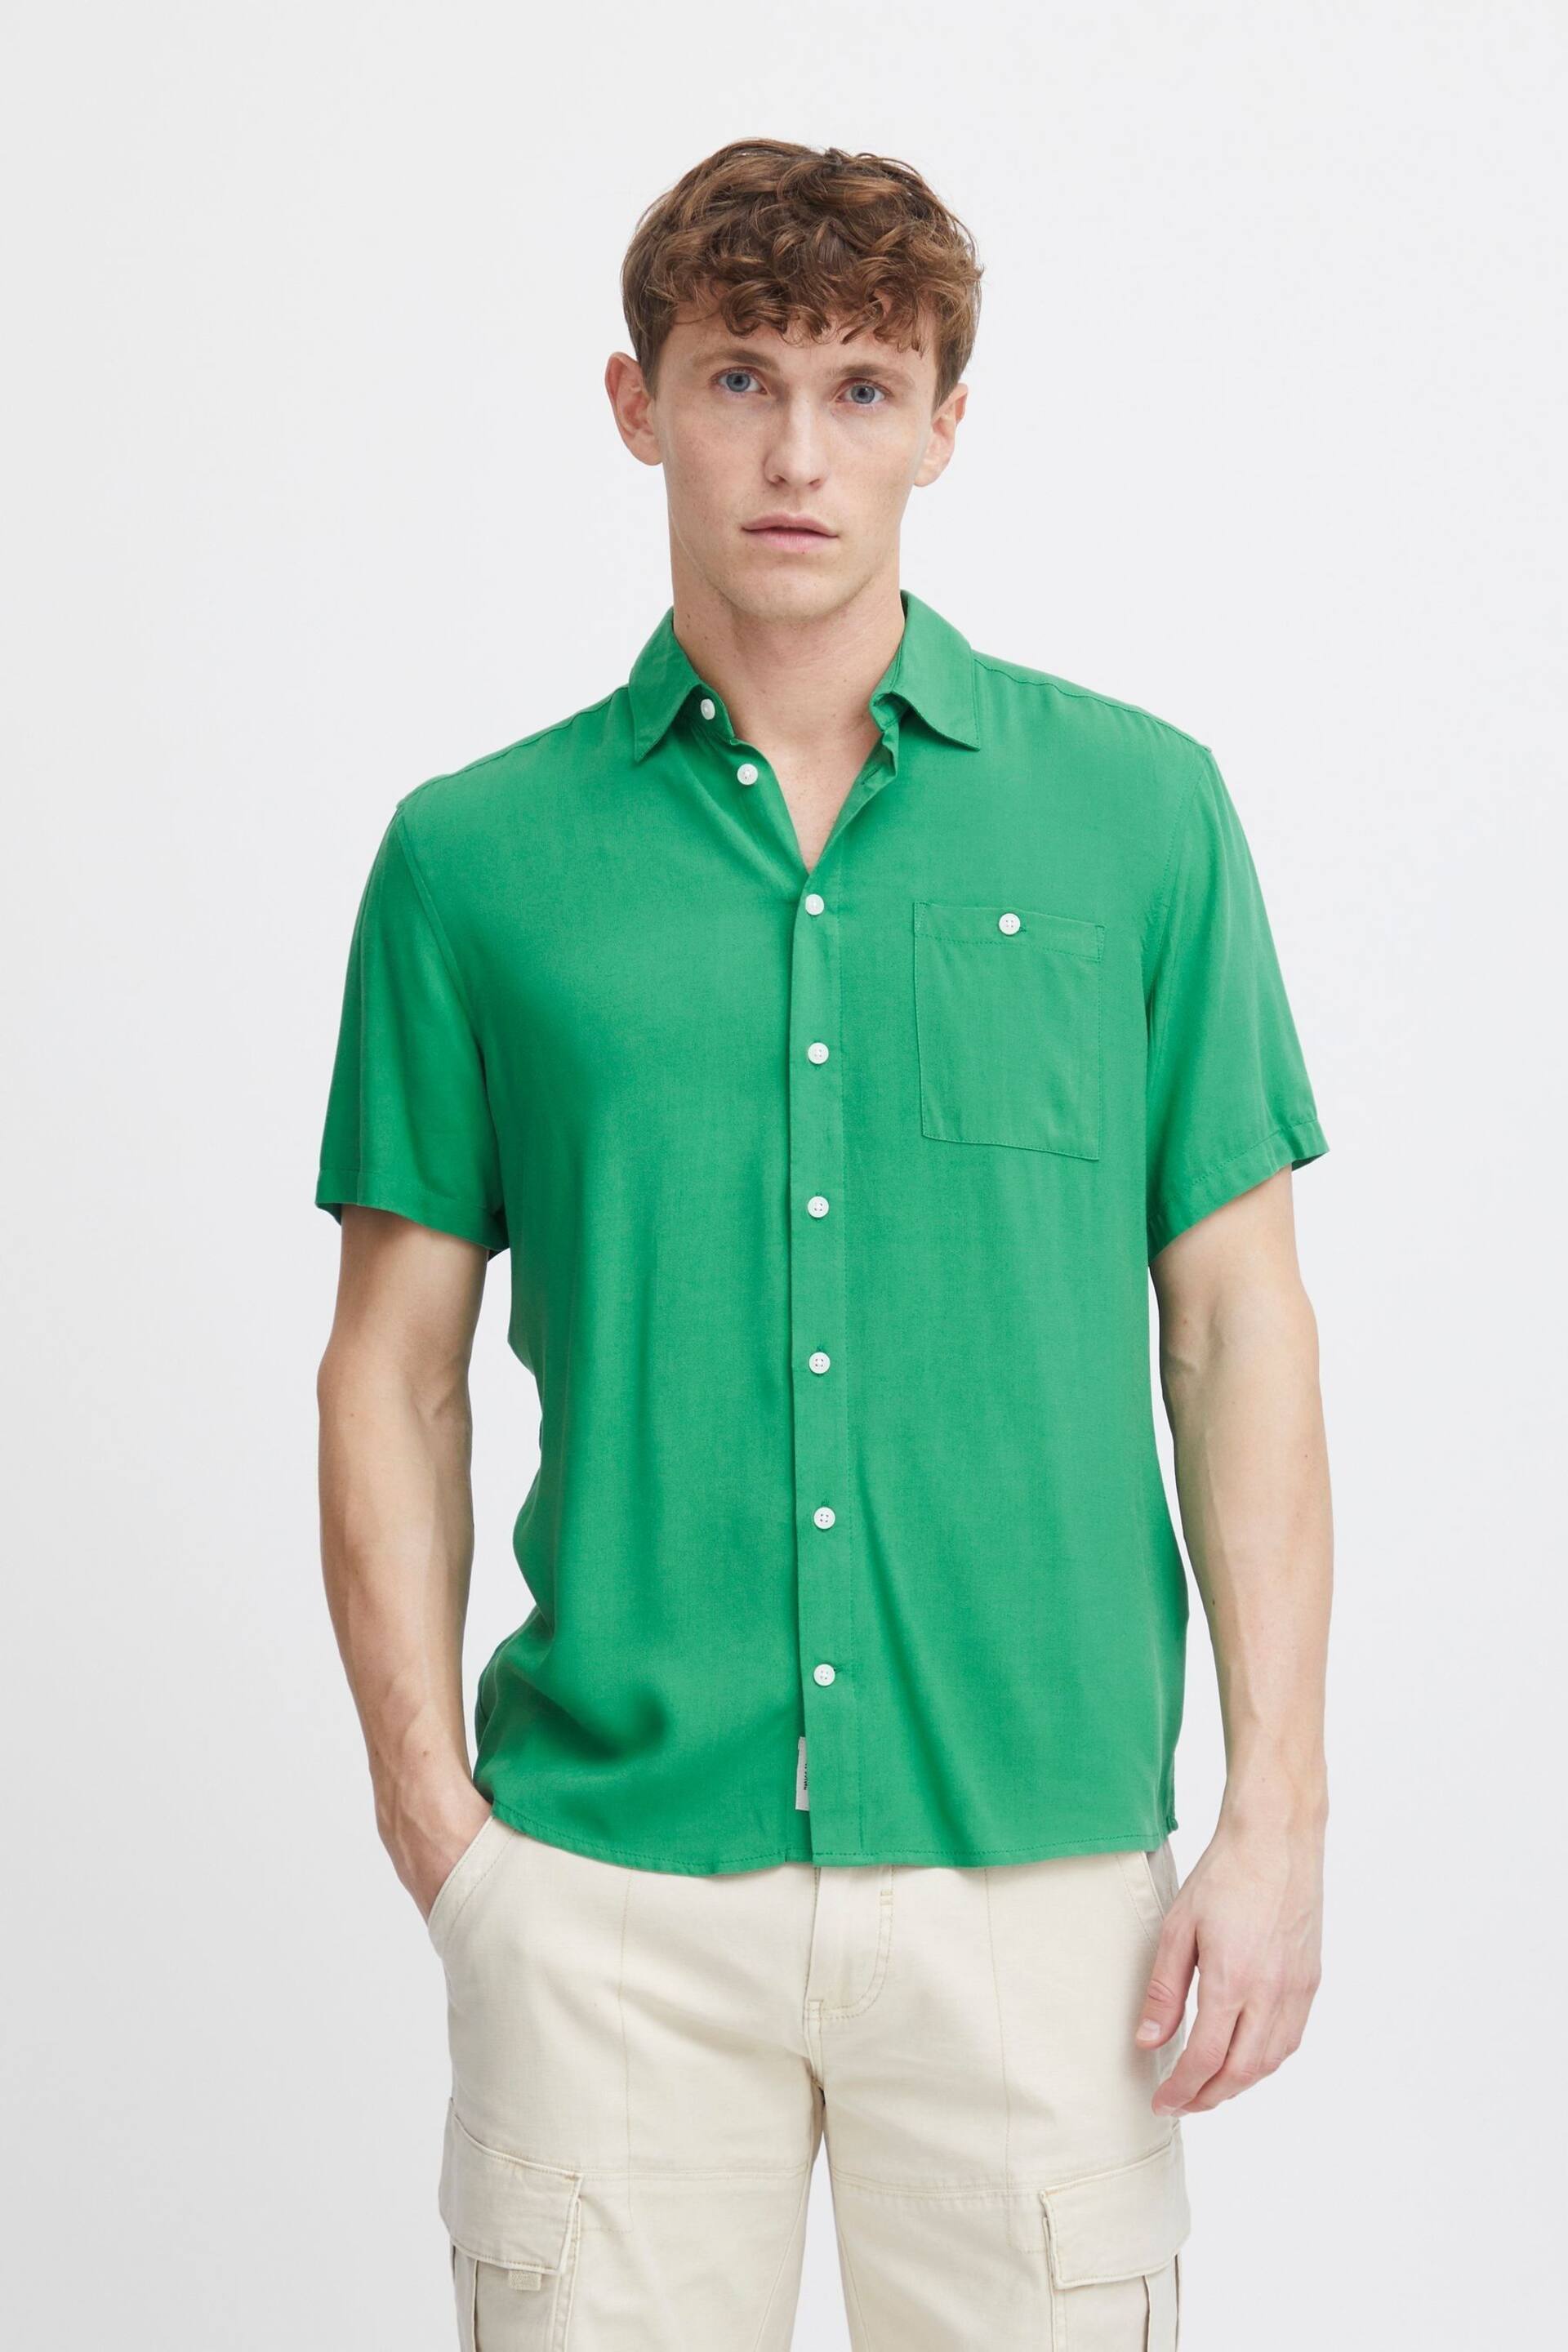 Blend Green Short Sleeve Shirt - Image 1 of 5